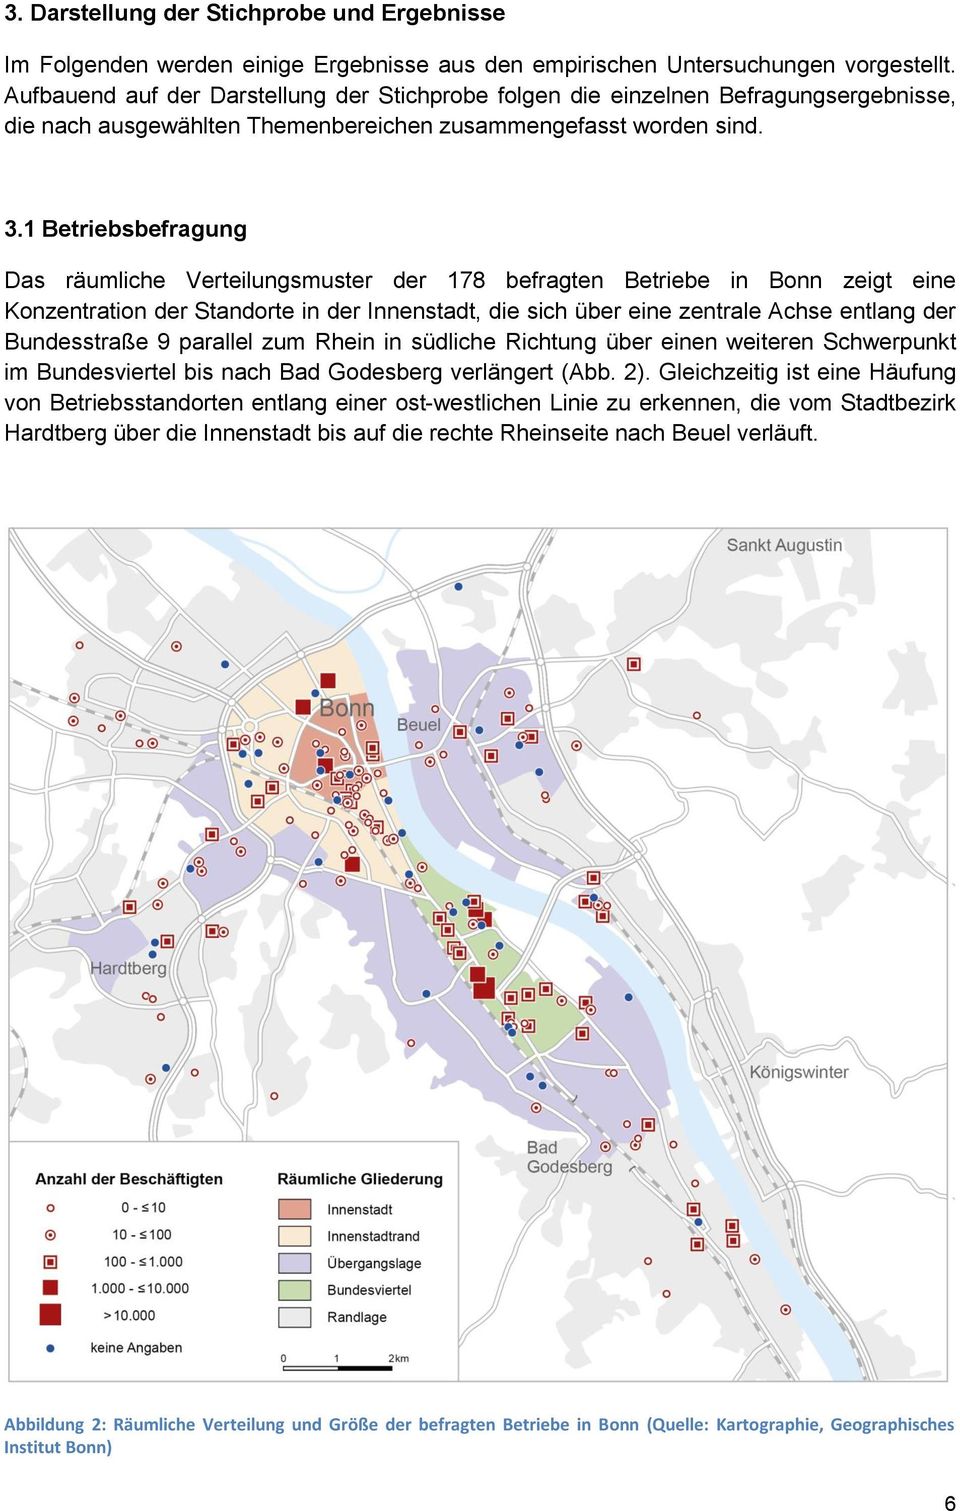 1 Betriebsbefragung Das räumliche Verteilungsmuster der 178 befragten Betriebe in Bonn zeigt eine Konzentration der Standorte in der Innenstadt, die sich über eine zentrale Achse entlang der